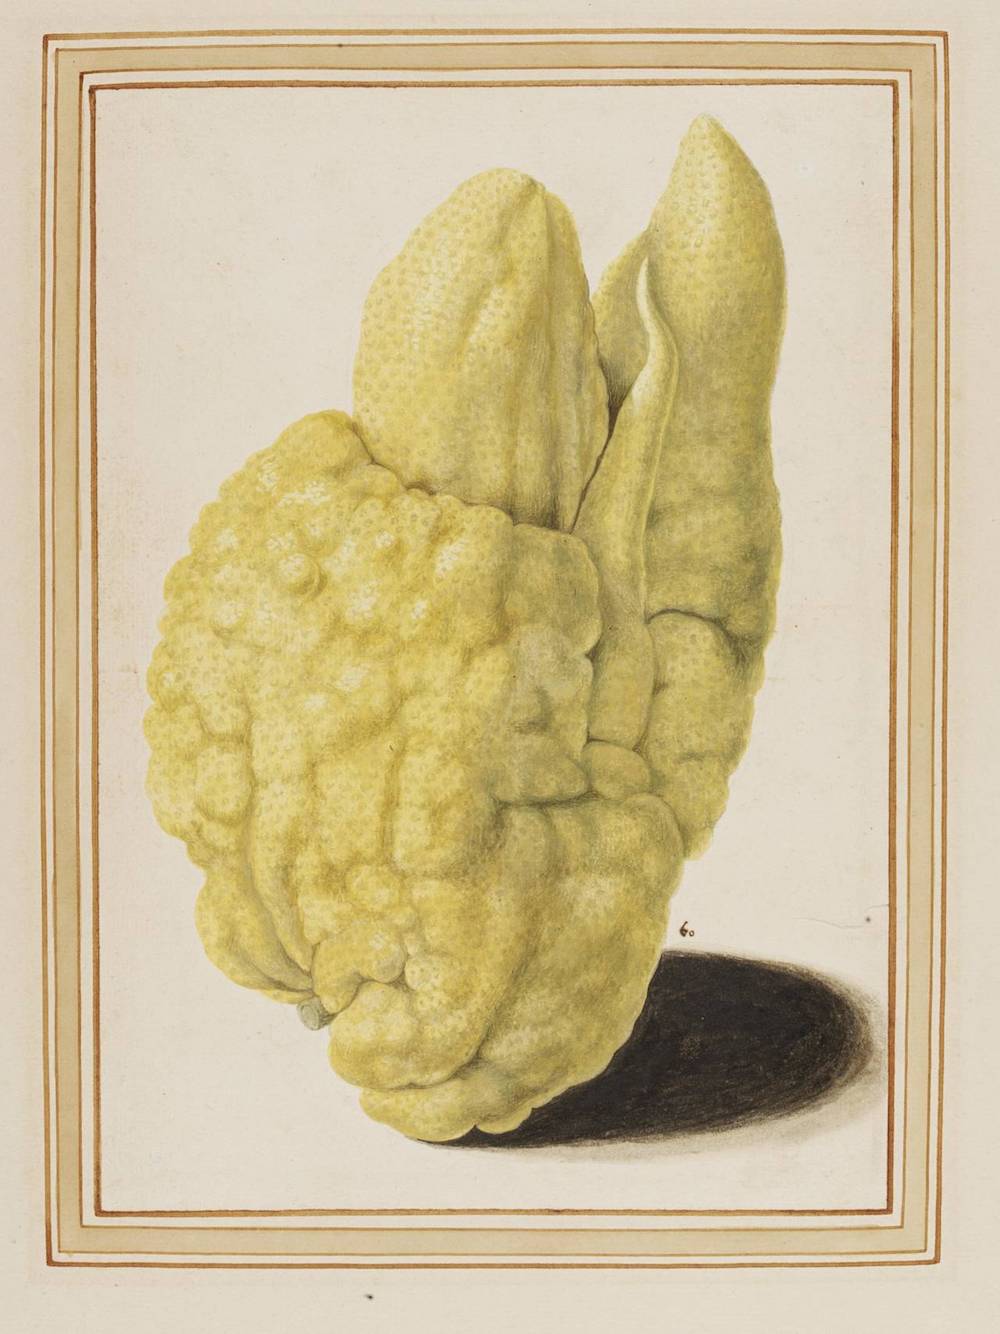 《香橼》（Citron），Vincenzo Leonardi, 约1640, 意大利罗马 © Victoria and Albert Museum, London